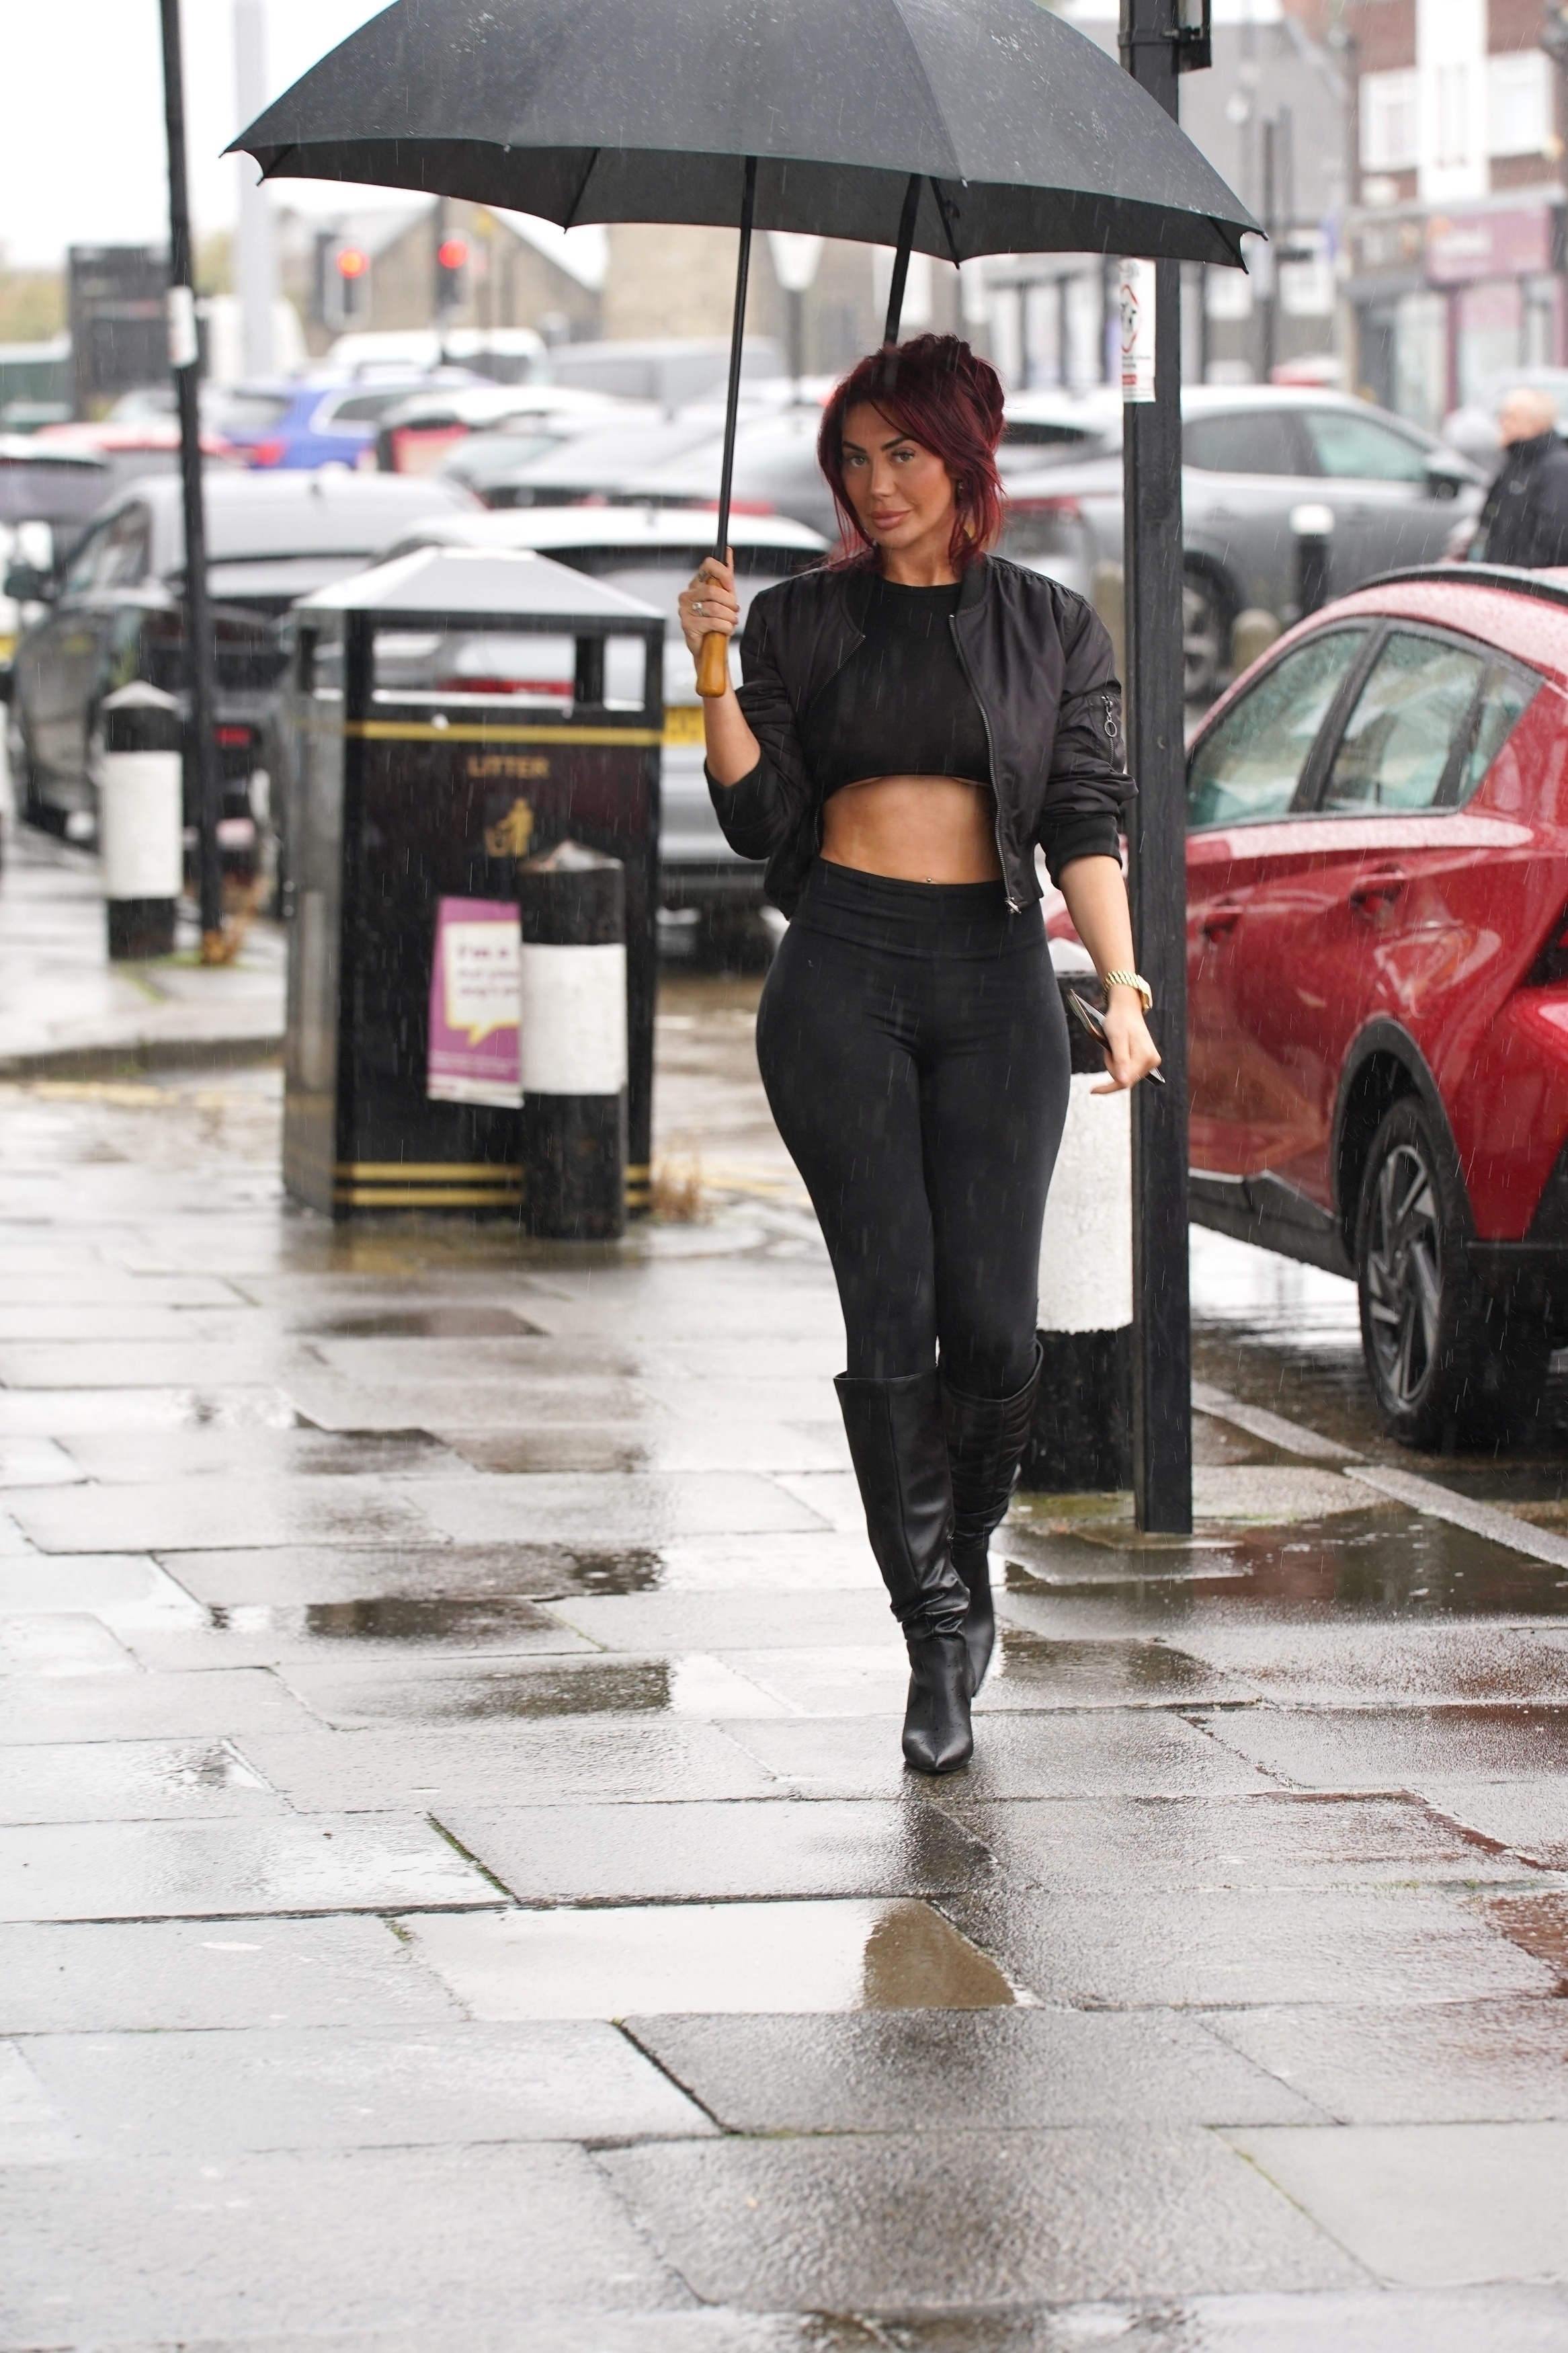 Sie versteckte sich unter einem schwarzen Regenschirm, als sie in Newcastle ausstieg